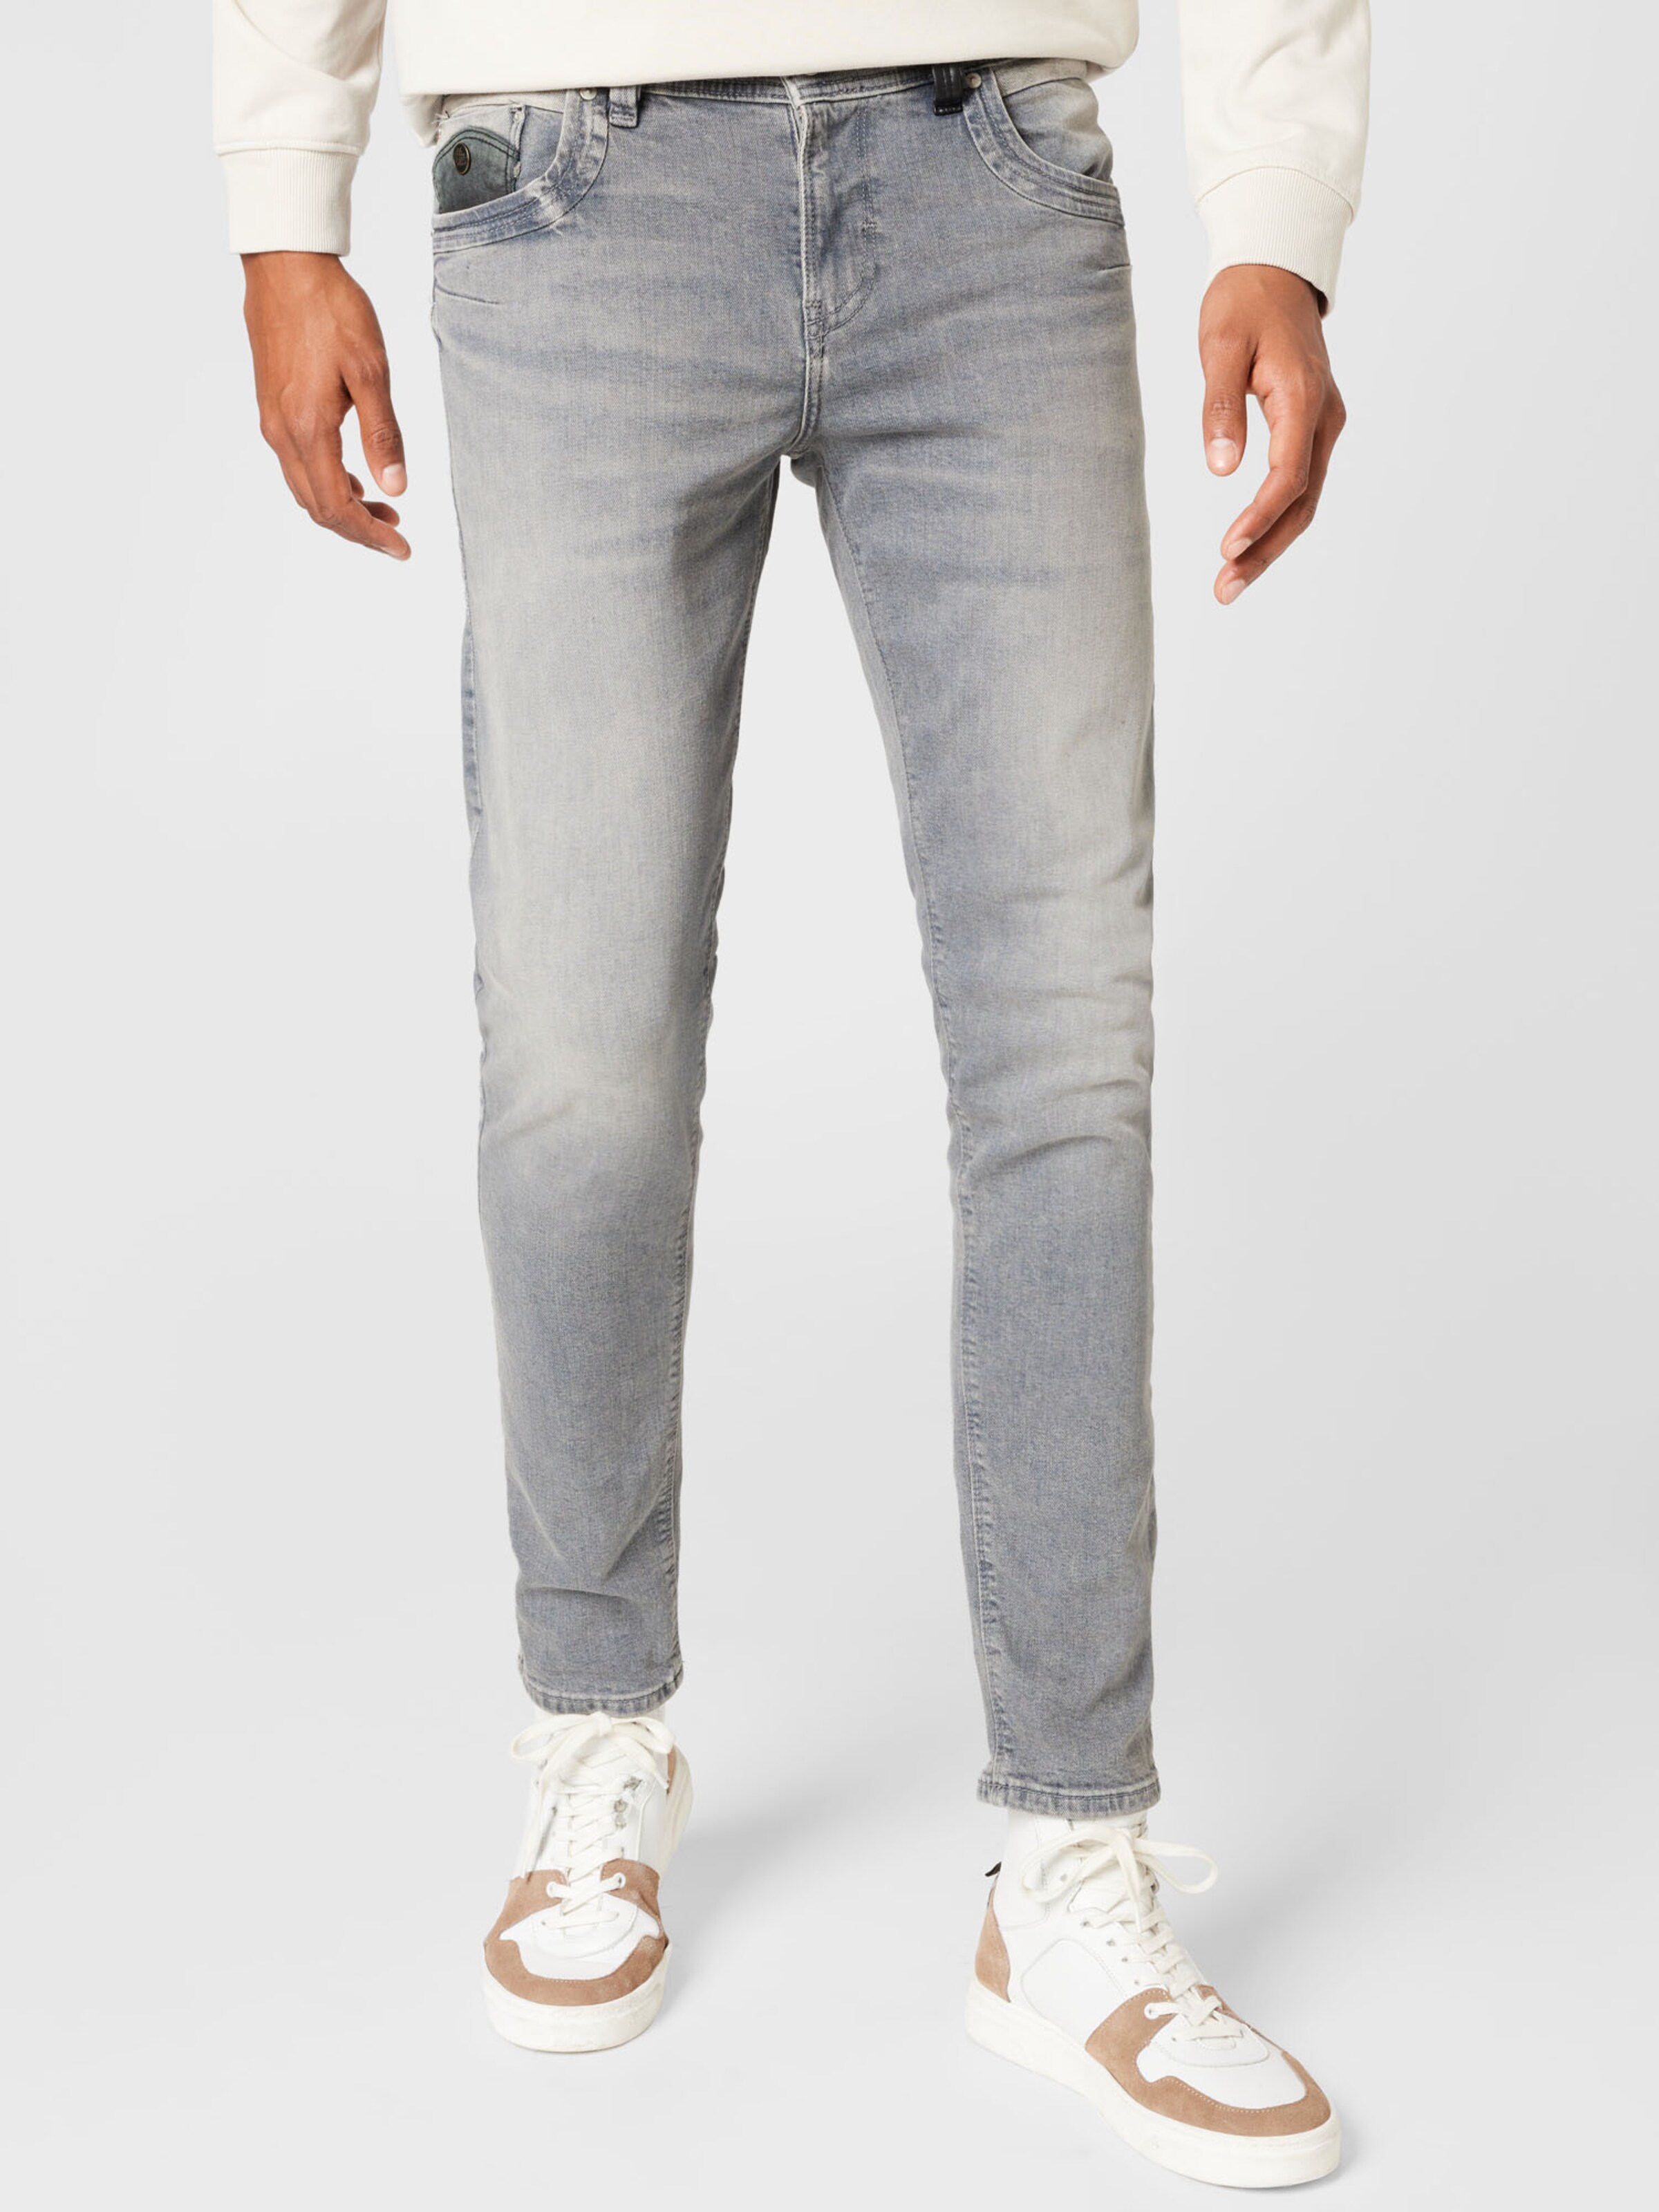 Jeans DRAPER ABOUT YOU Uomo Abbigliamento Pantaloni e jeans Jeans Jeans slim & sigaretta 